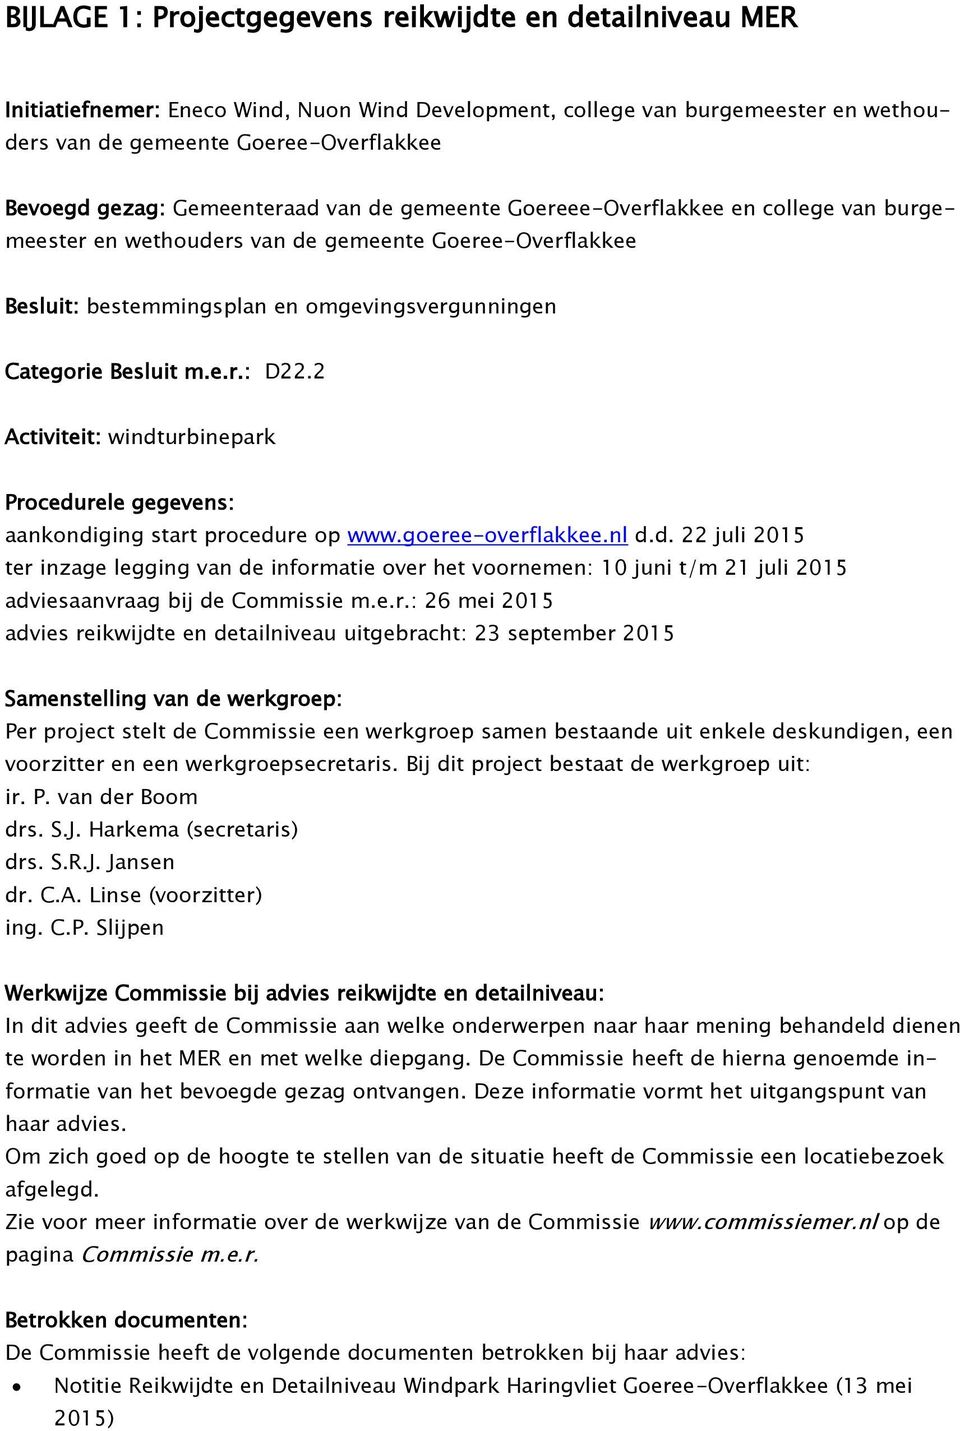 2 Activiteit: windturbinepark Procedurele gegevens: aankondiging start procedure op www.goeree-overflakkee.nl d.d. 22 juli 2015 ter inzage legging van de informatie over het voornemen: 10 juni t/m 21 juli 2015 adviesaanvraag bij de Commissie m.